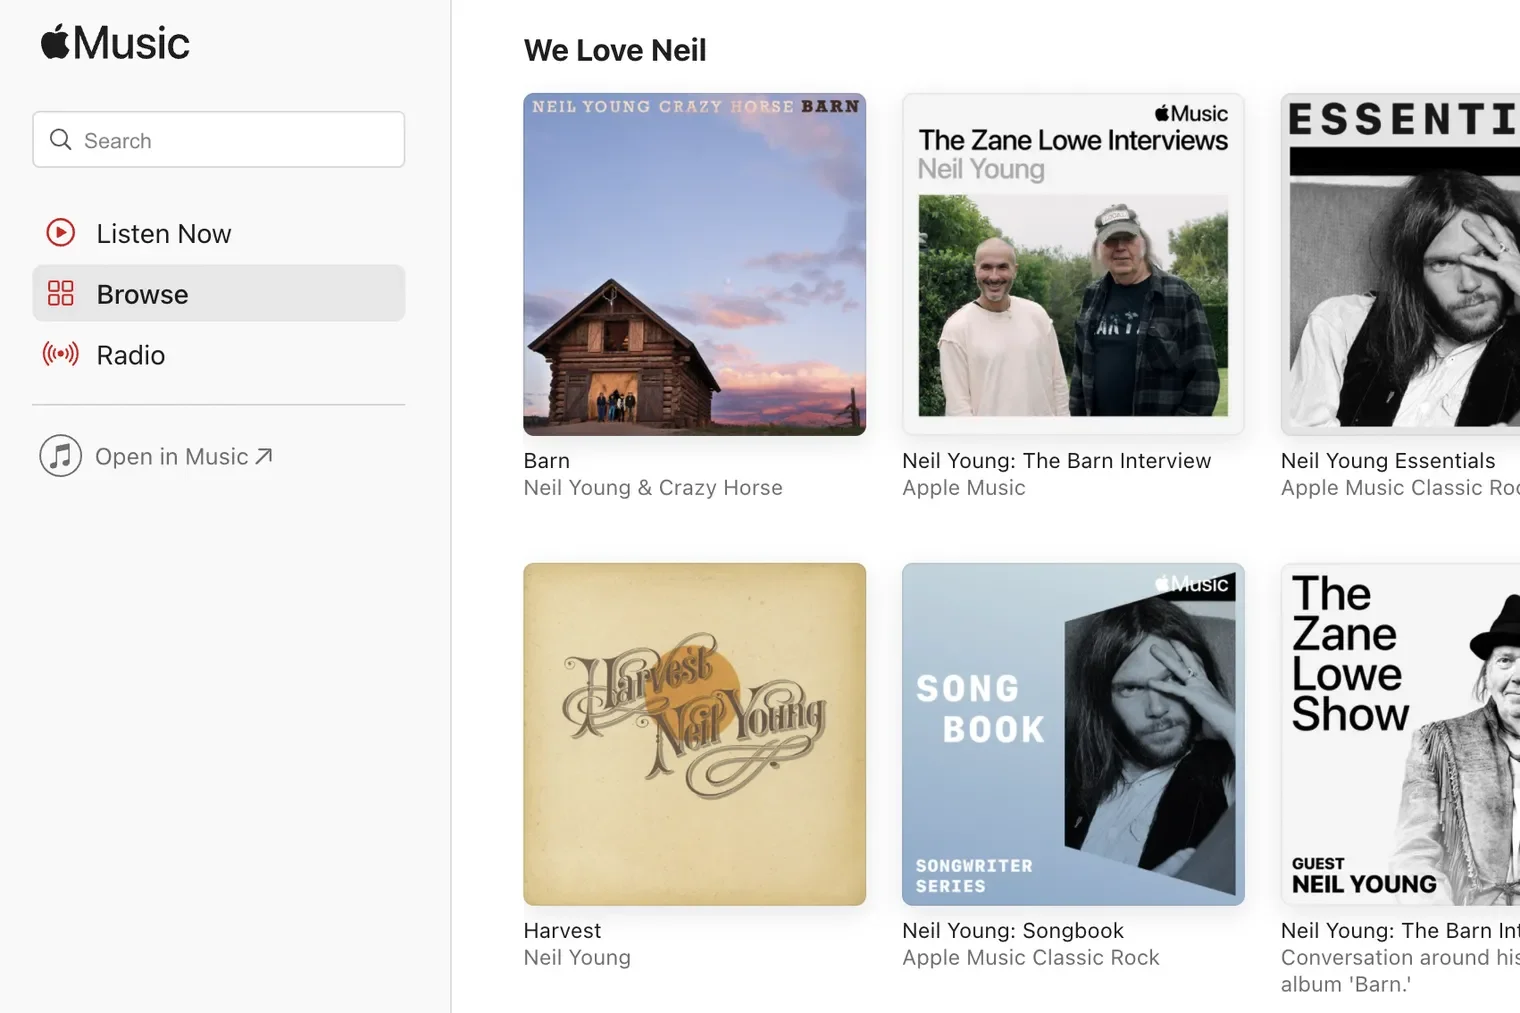 Η Apple Music δηλώνει «We Love Neil» καθώς ο Neil Young αποσύρει τη μουσική του από το Spotify, το οποίο προτίμησε τον Joe Rogan